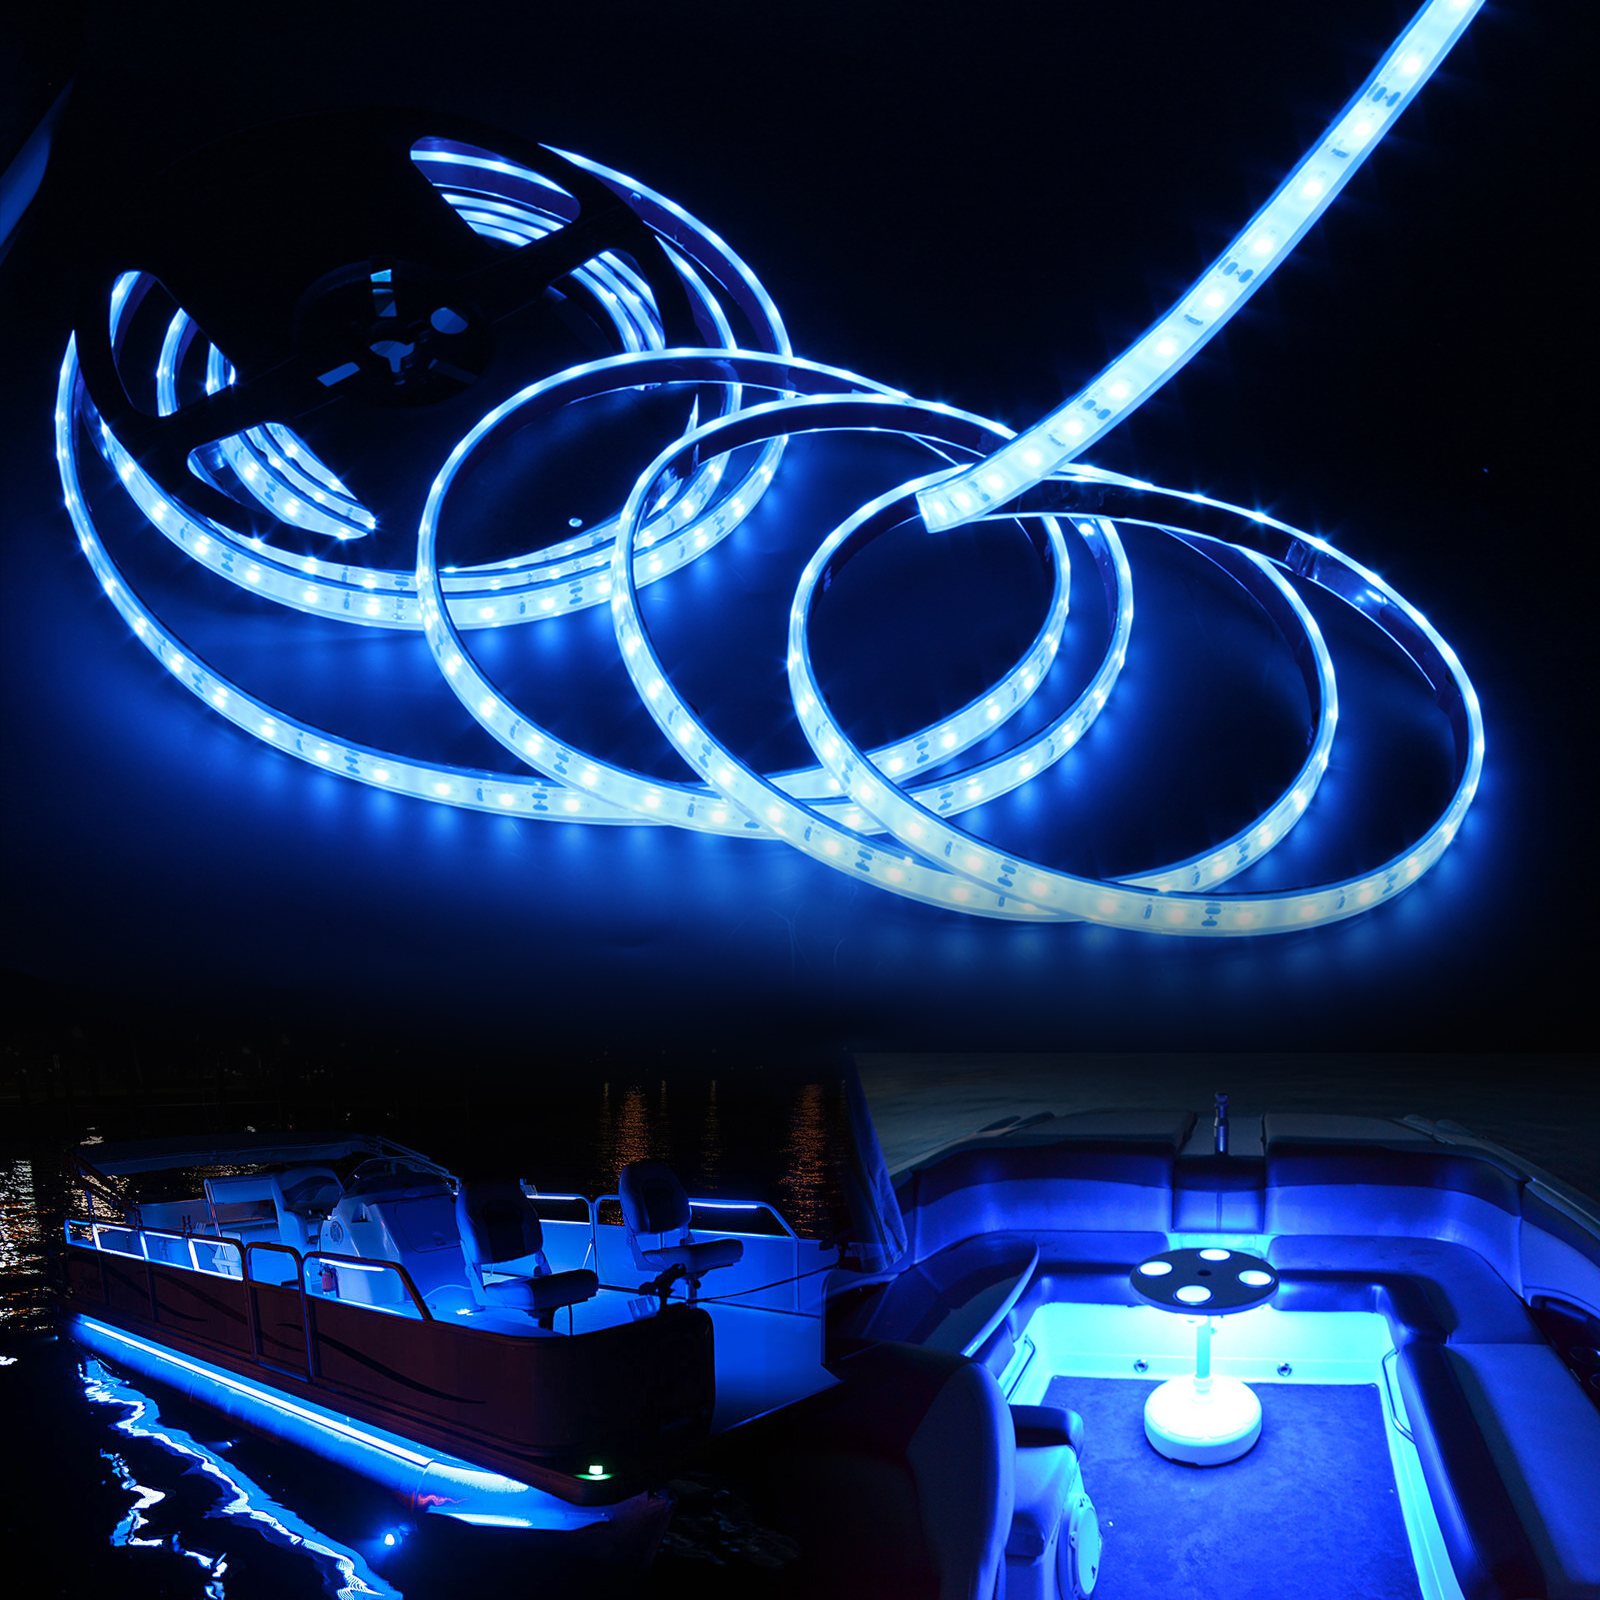 Vbakor Pontoon LED Strip Lights, 12V 5M/16.4FT Waterproof Marine LED Light  Boat Interior Light, Boat Deck Light for Pontoon Fishing Boat, Extension  Cable Included Red